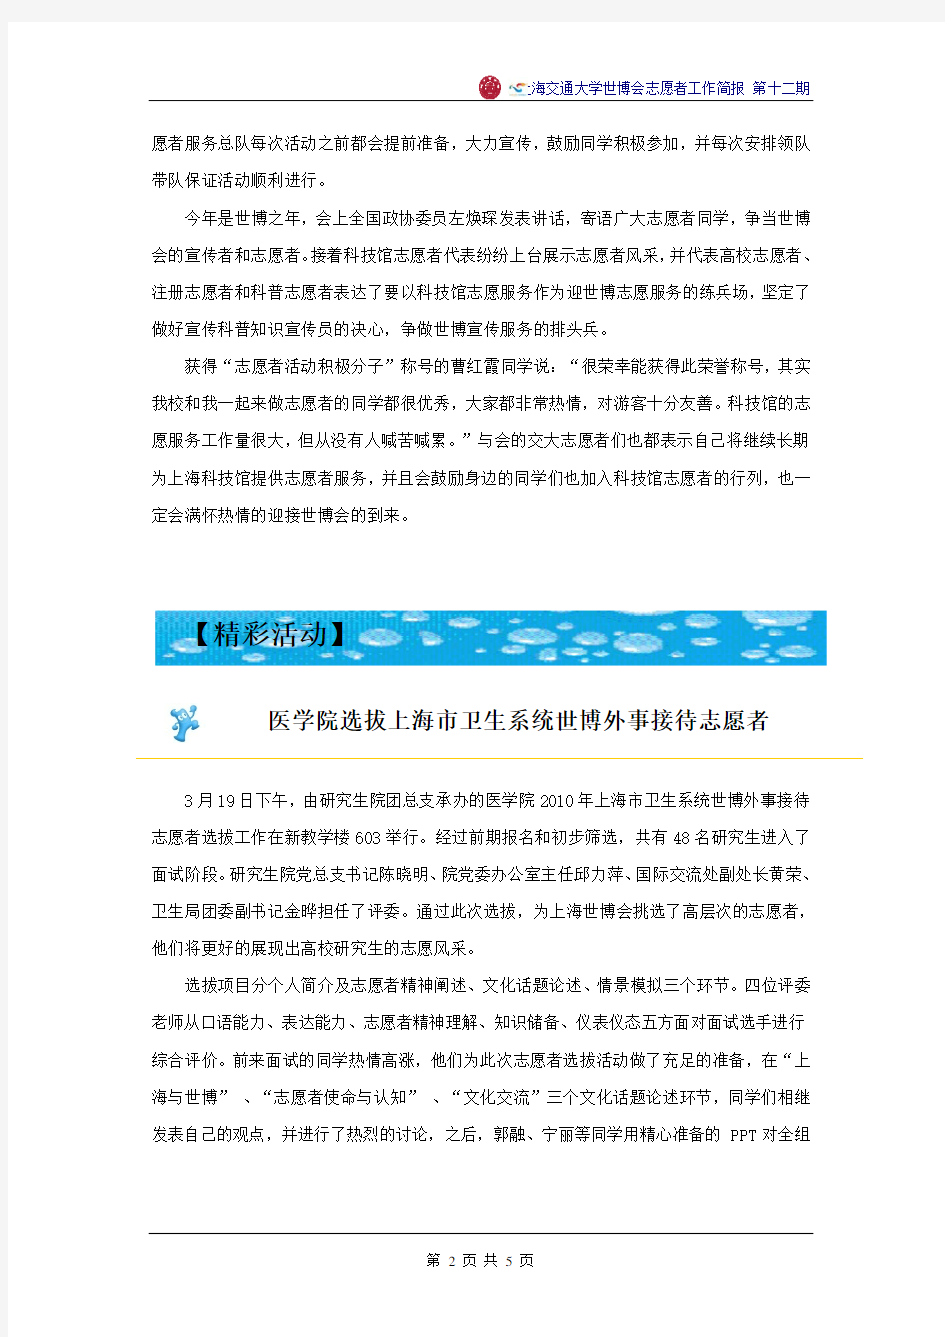 上海交通大学世博会志愿者工作简报—第十二期